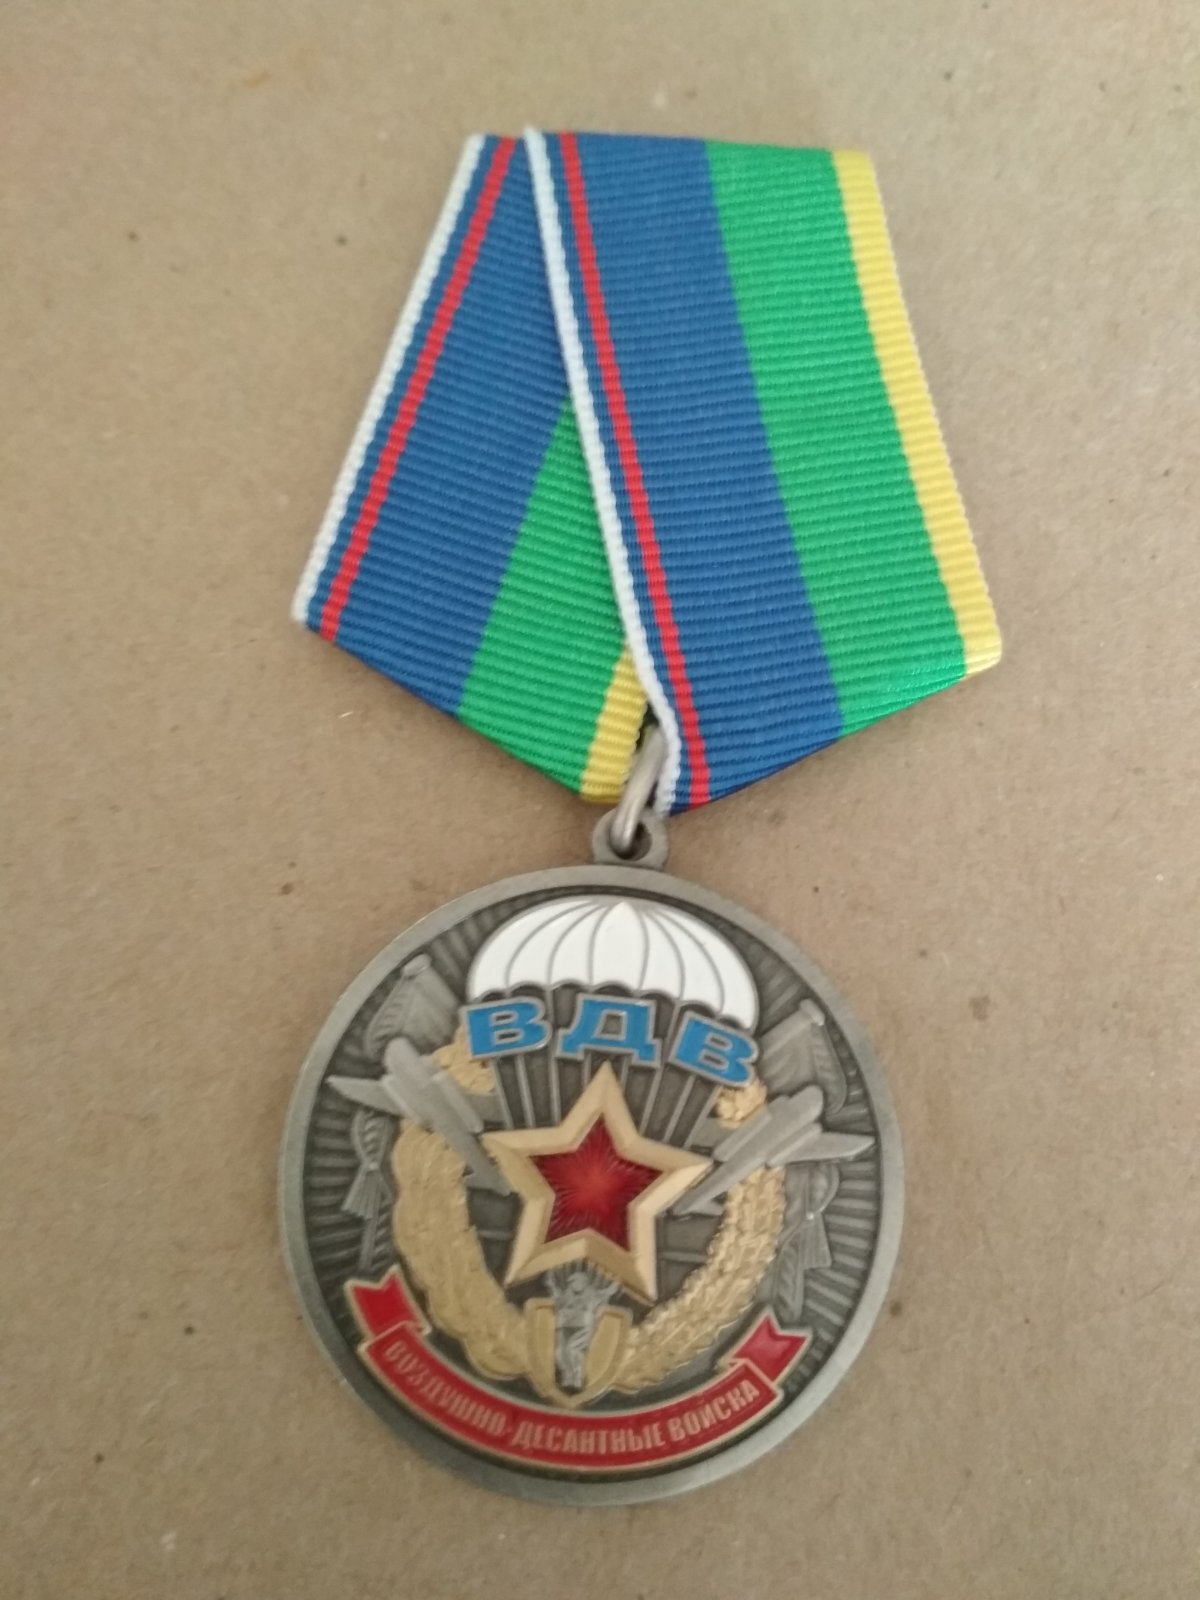 Медаль "Ветеран ВДВ". Два ИЛ-76, купол парашюта, надпись "ВДВ", в центре красная звезда.